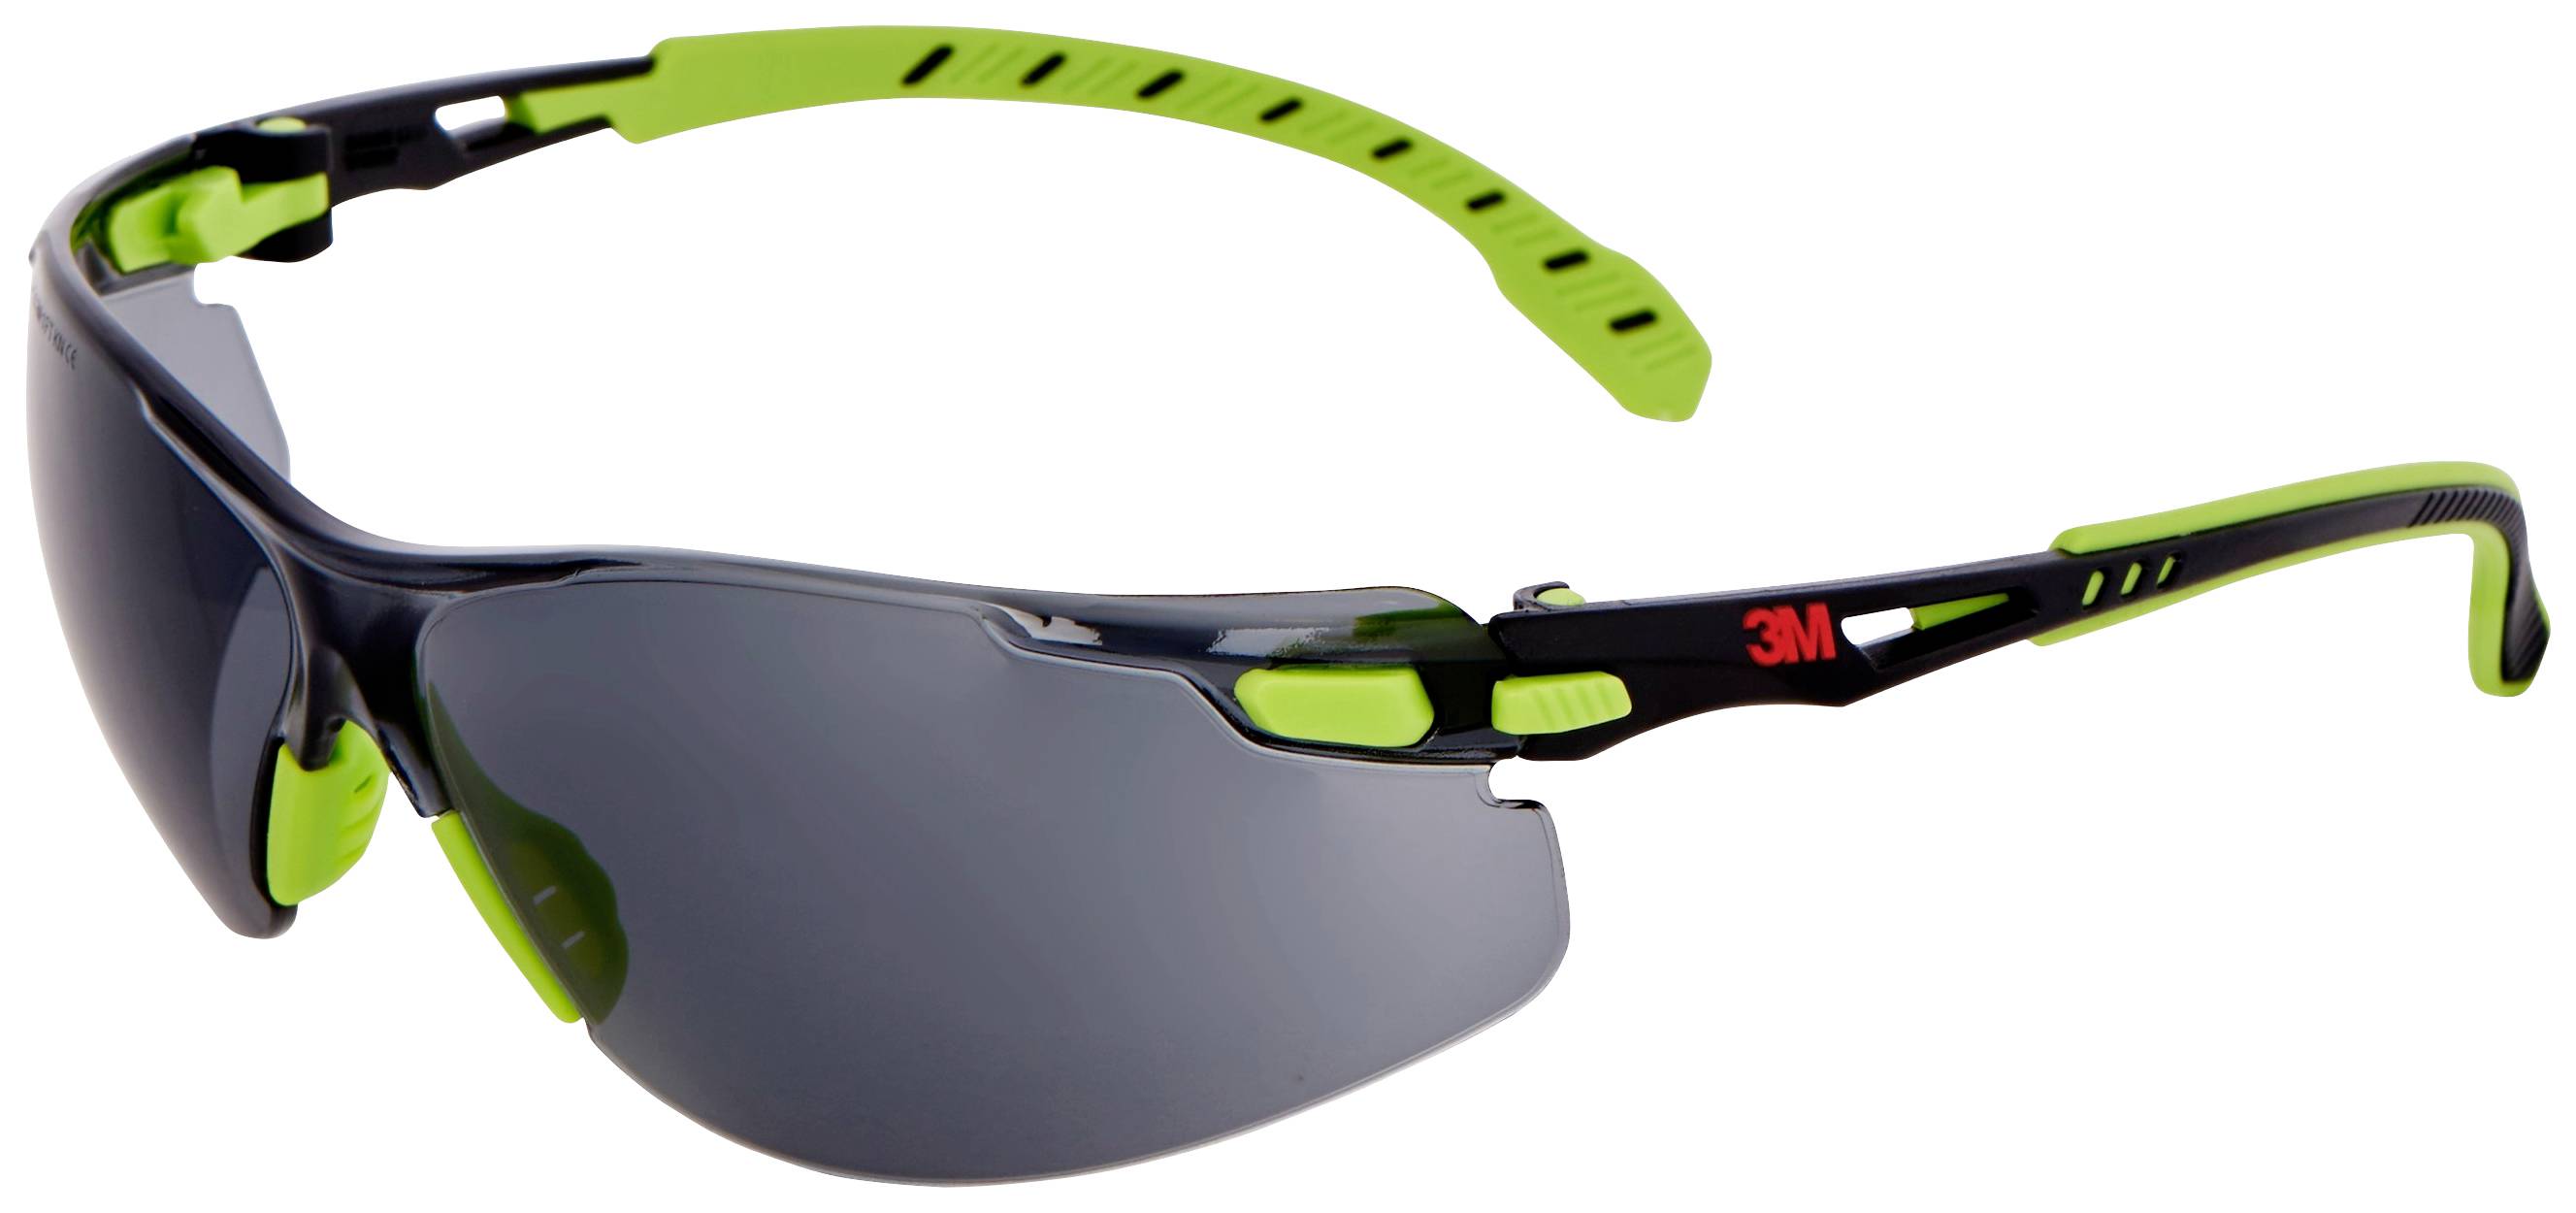 3M Solus S1202SGAF Schutzbrille mit Antibeschlag-Schutz Grün, Schwarz DIN EN 166 (S1202SGAF)